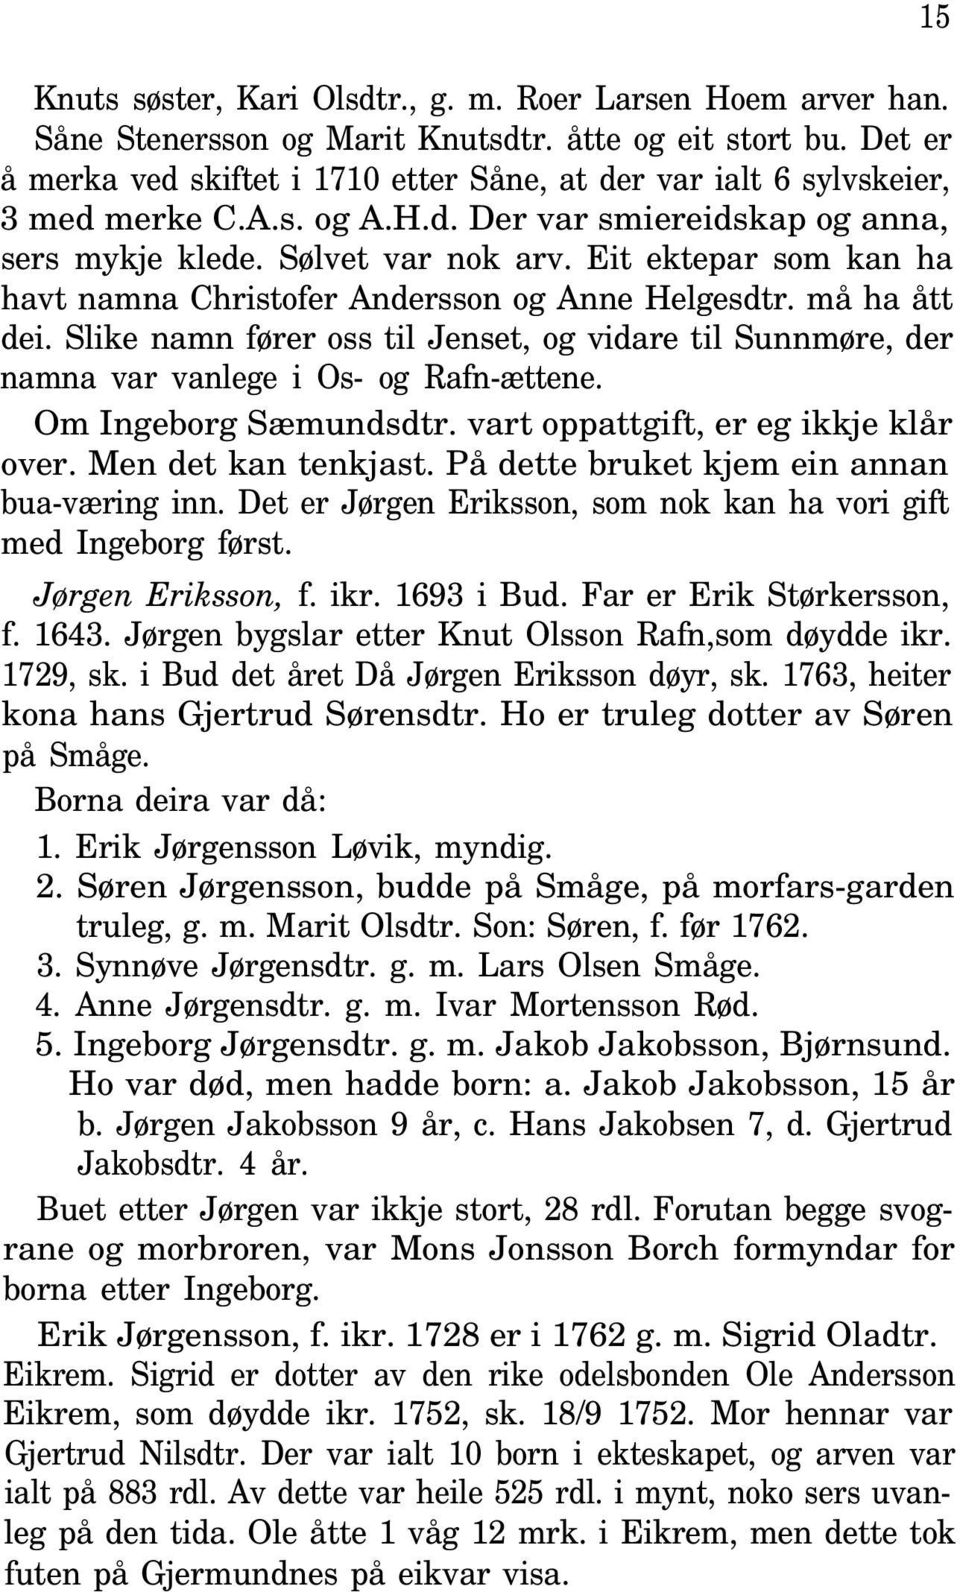 Eit ektepar som kan ha havt namna Christofer Andersson og Anne Helgesdtr. må ha ått dei. Slike namn fører oss til Jenset, og vidare til Sunnmøre, der namna var vanlege i Os- og Rafn-ættene.